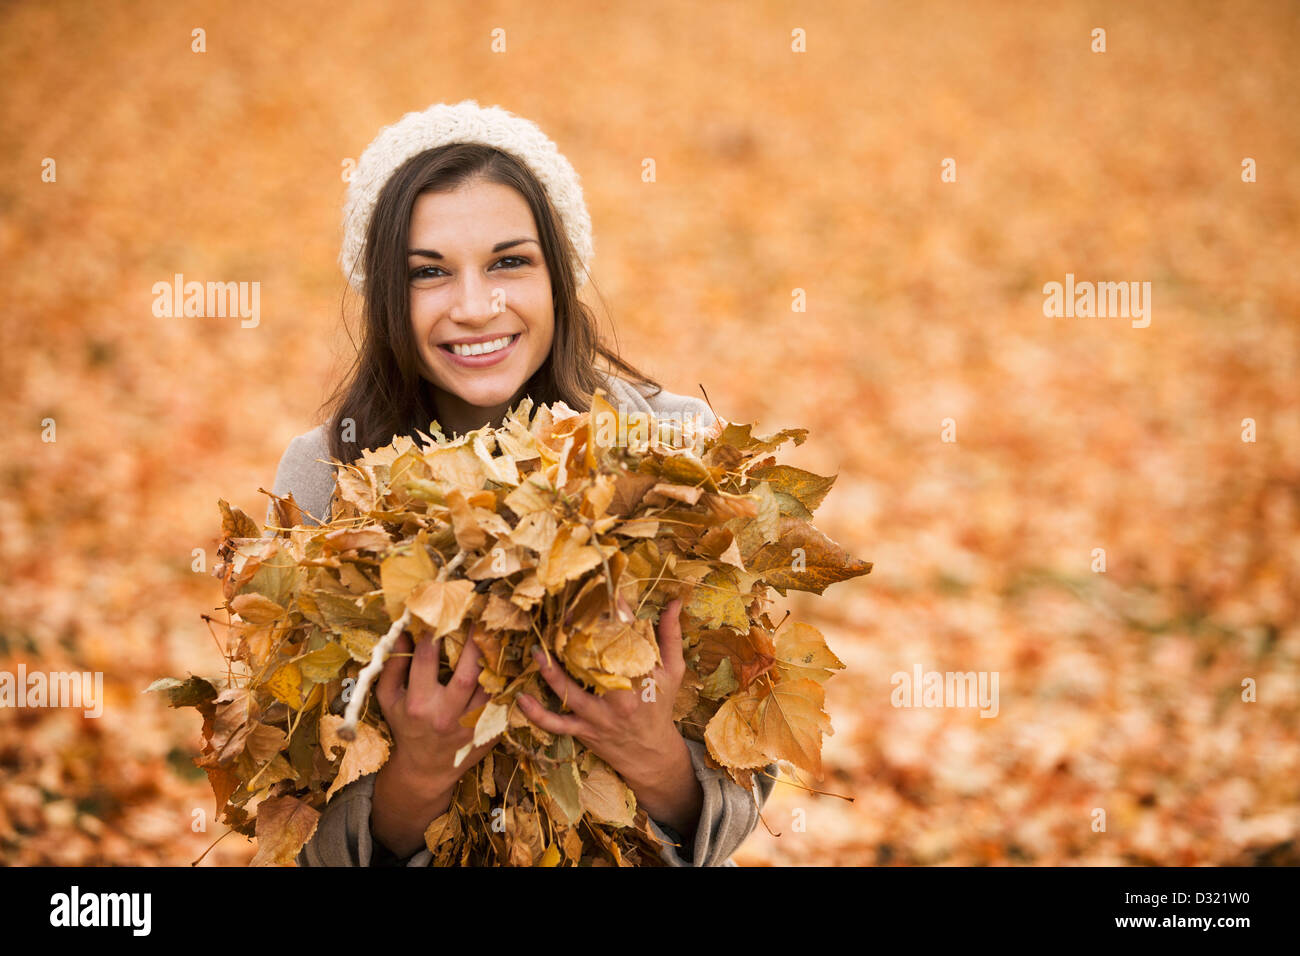 Kaukasische Frau spielt im Herbstlaub Stockfoto